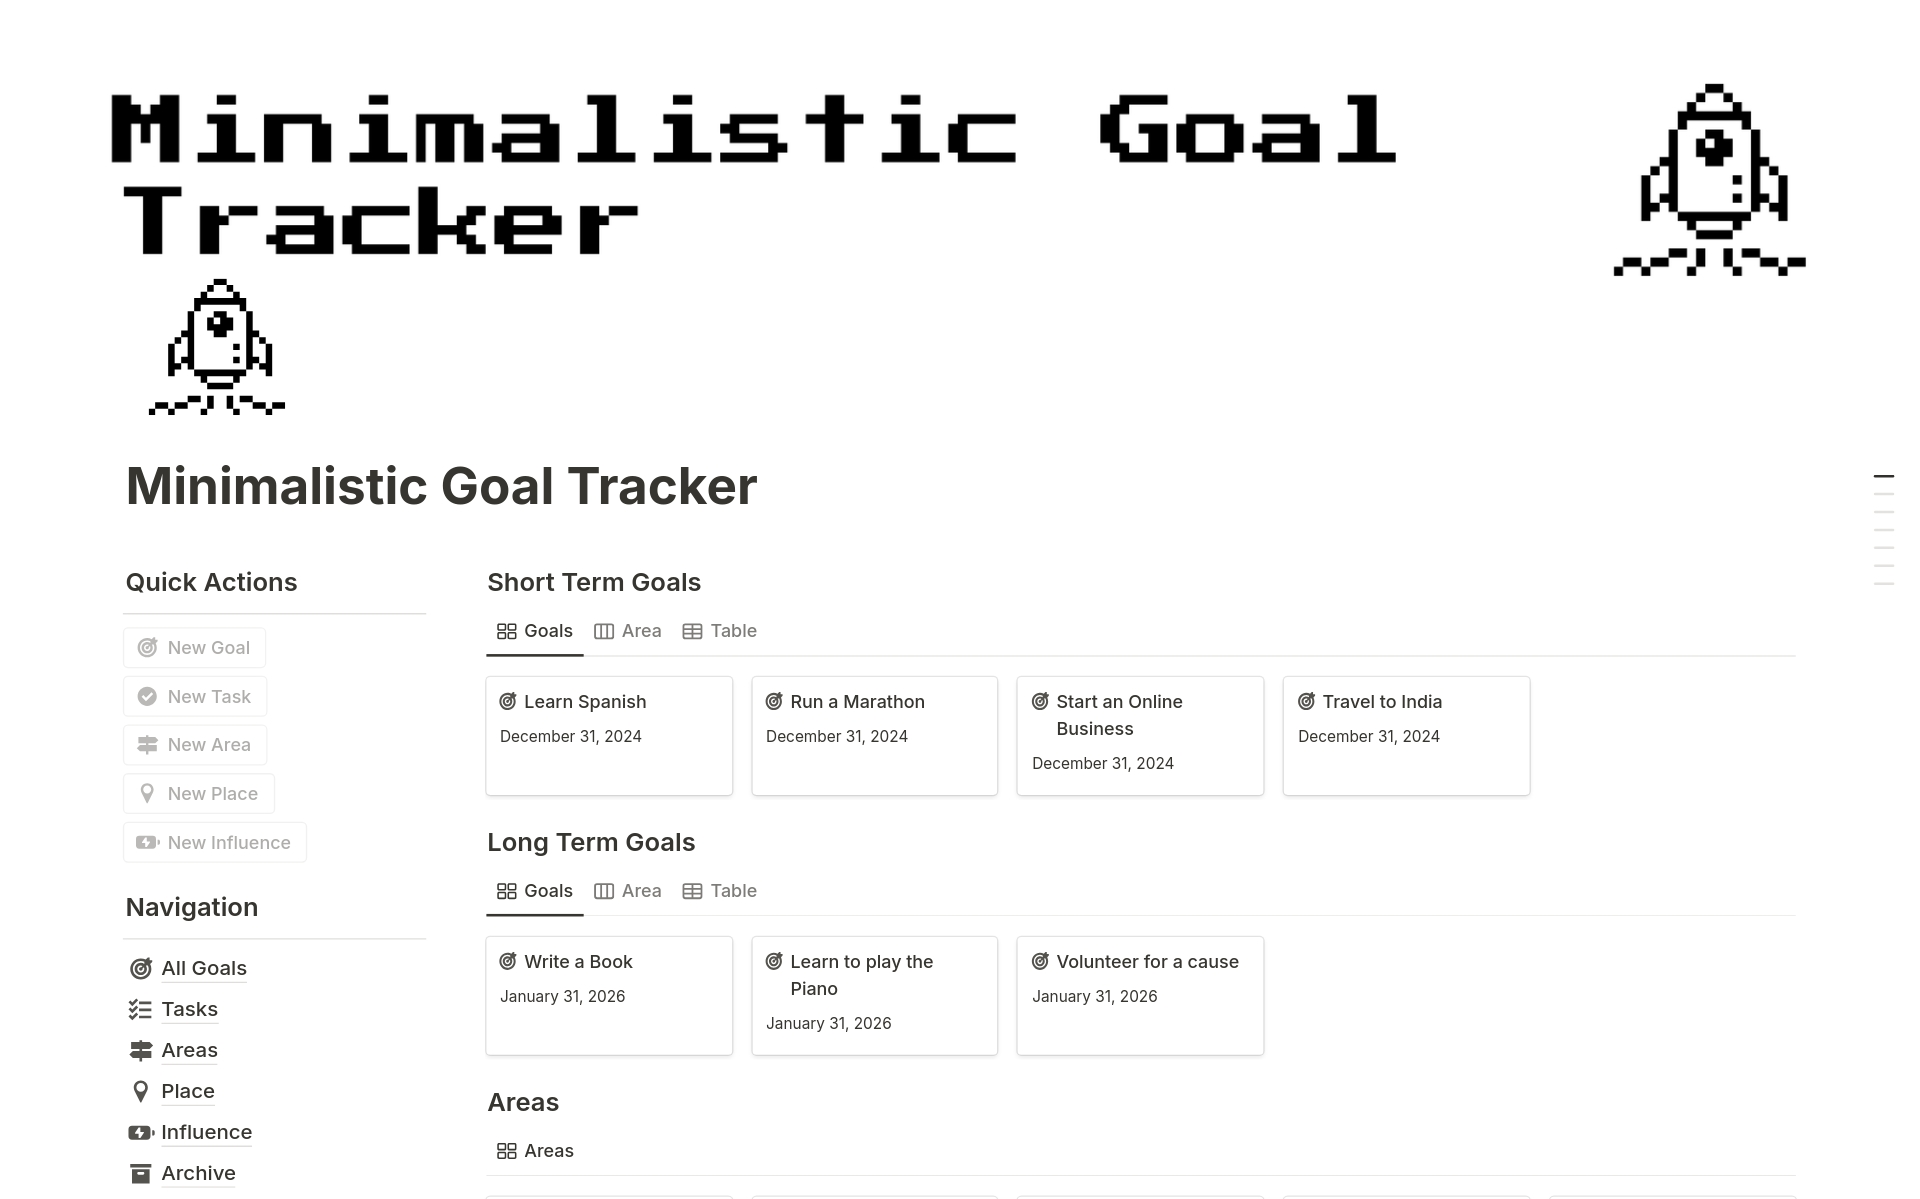 En förhandsgranskning av mallen för Goal Tracker